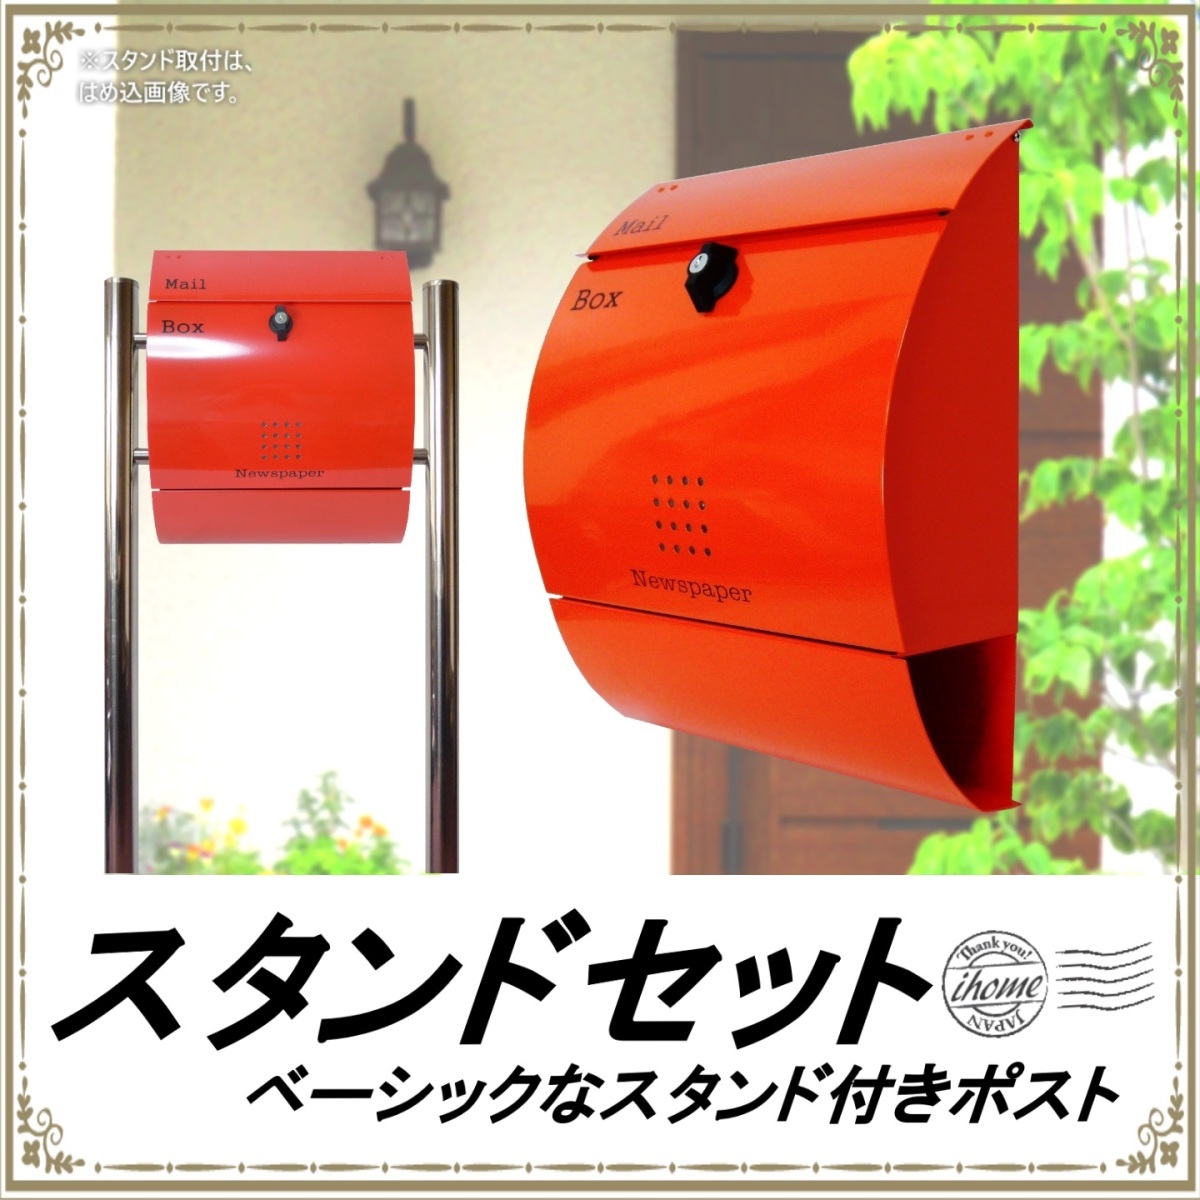 郵便ポスト郵便受けおしゃれかわいい人気北欧モダンデザイン大型メールボックススタンド型プレミアムステンレスレッド赤色ポストpm034s